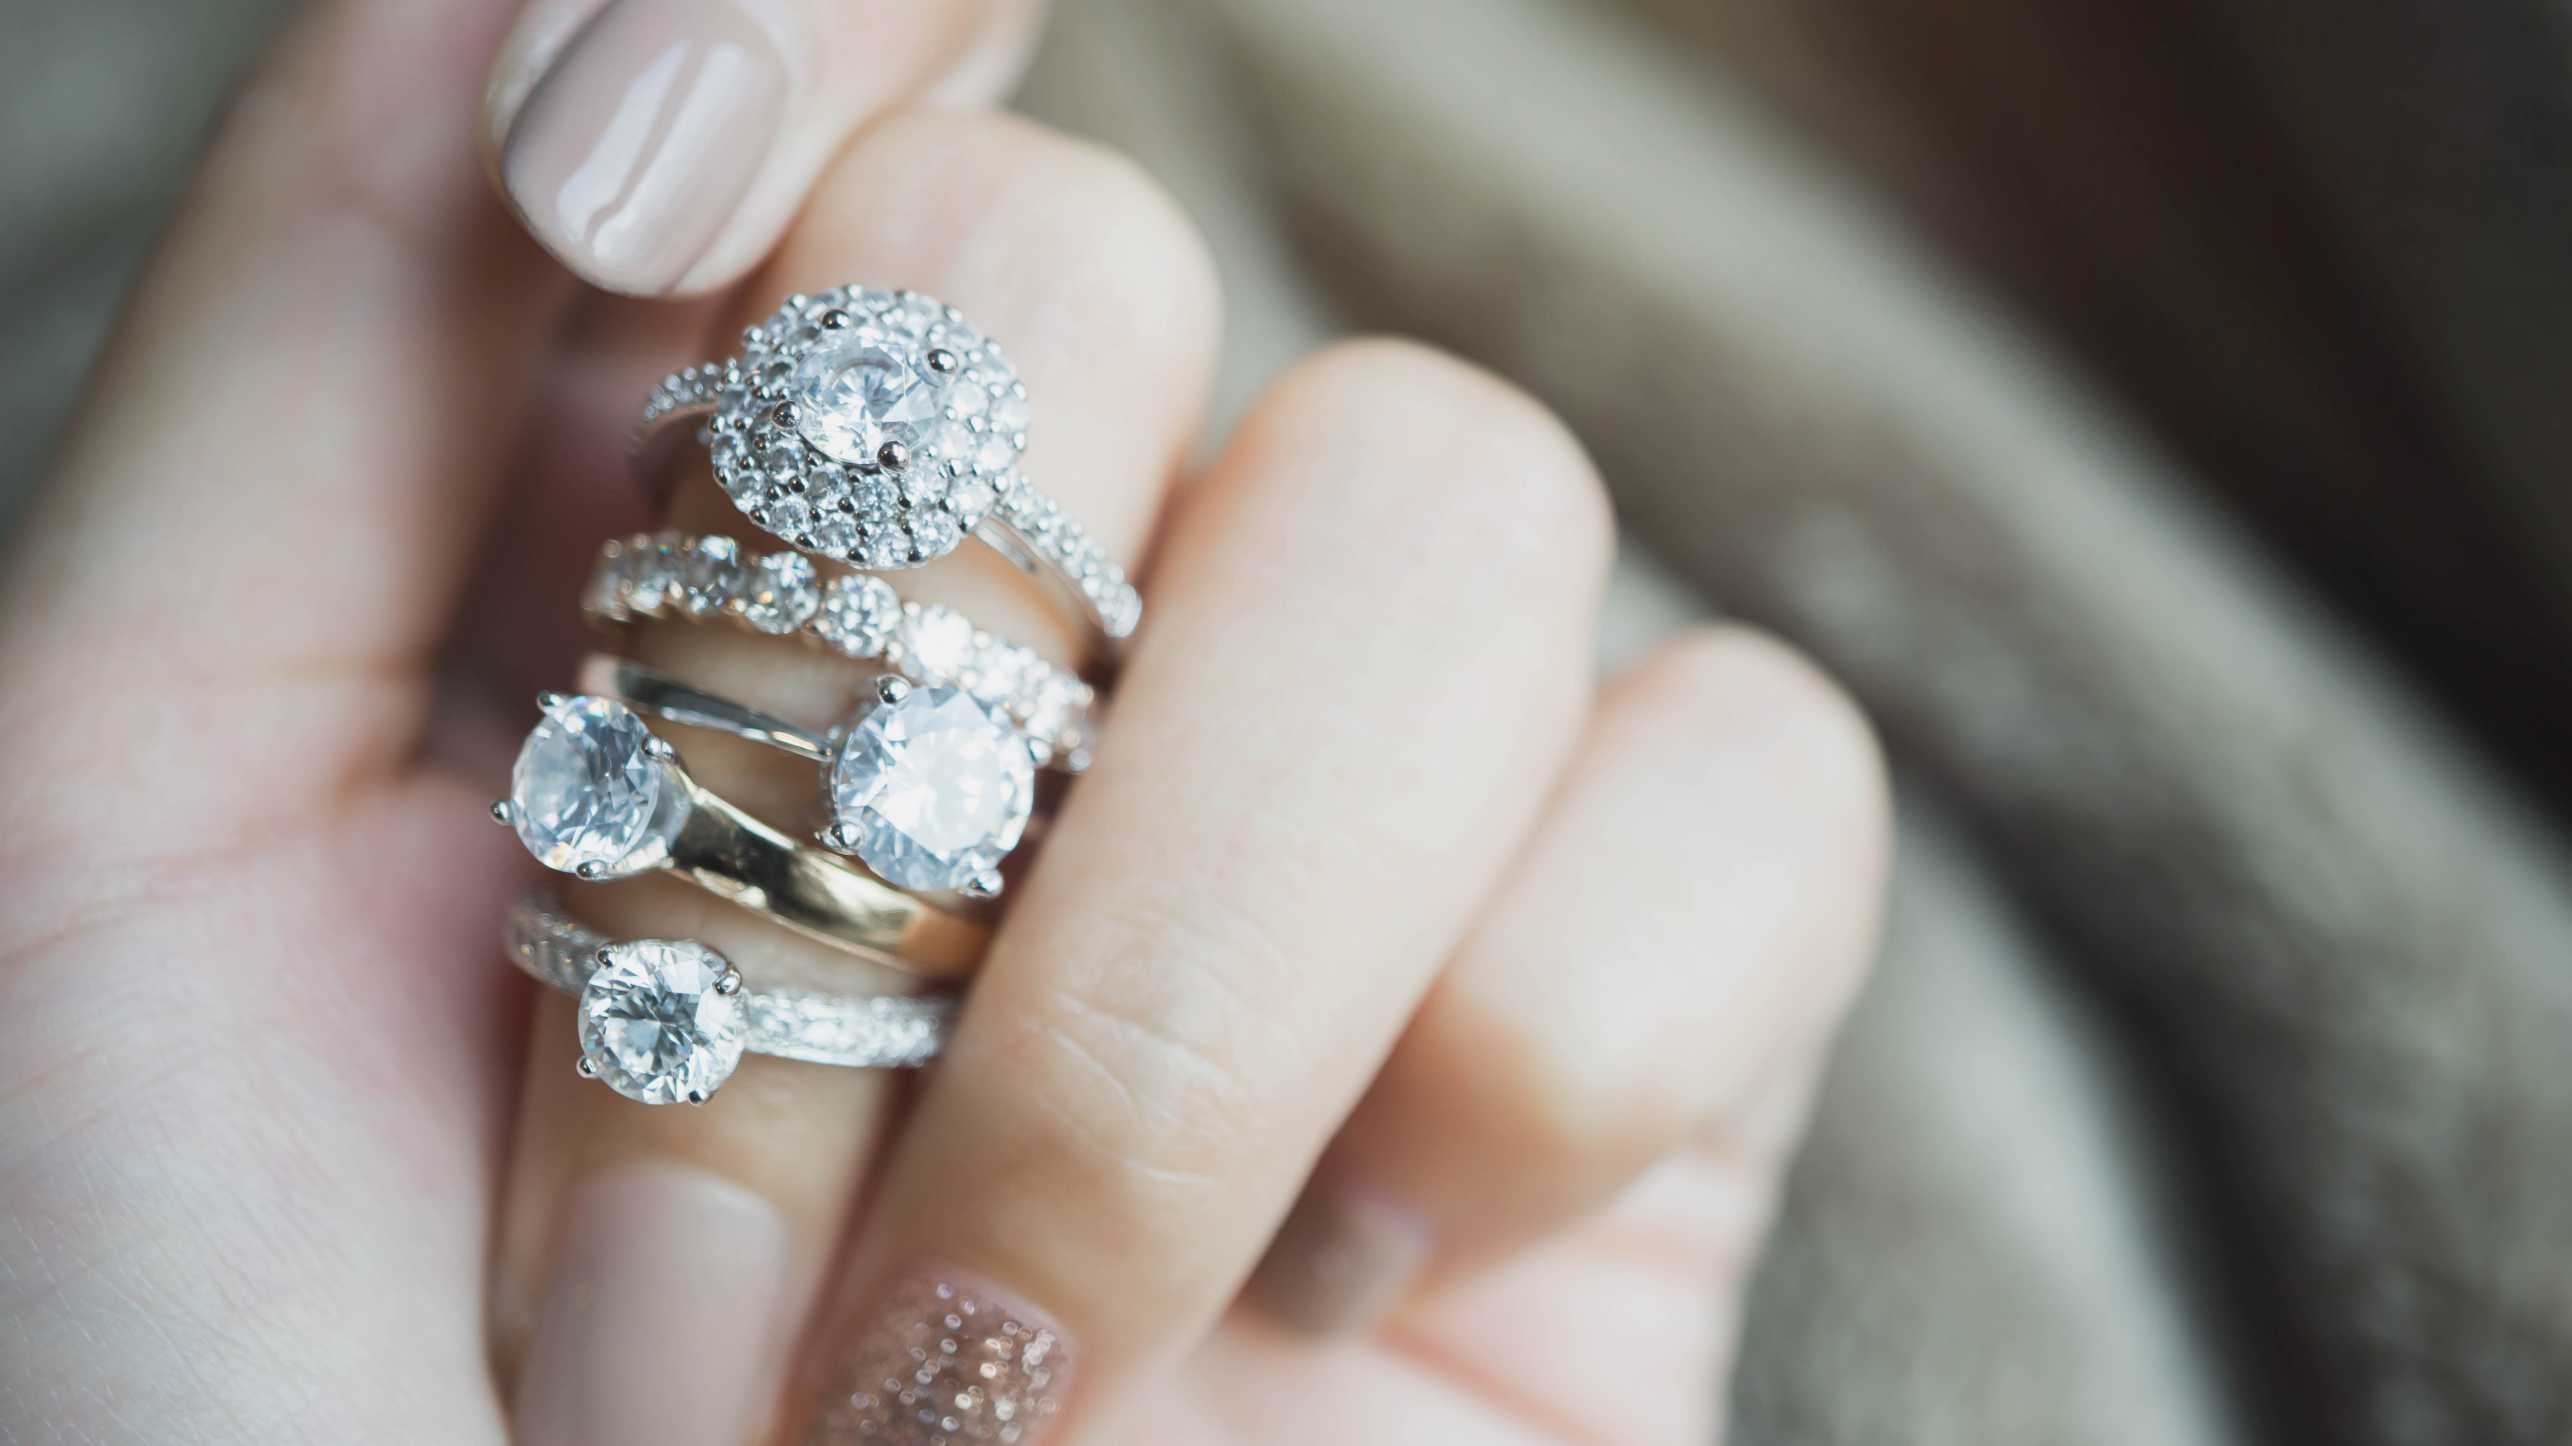 Vergrösserte Ansicht: Eine Frauenhand mit vielen Diamantringen